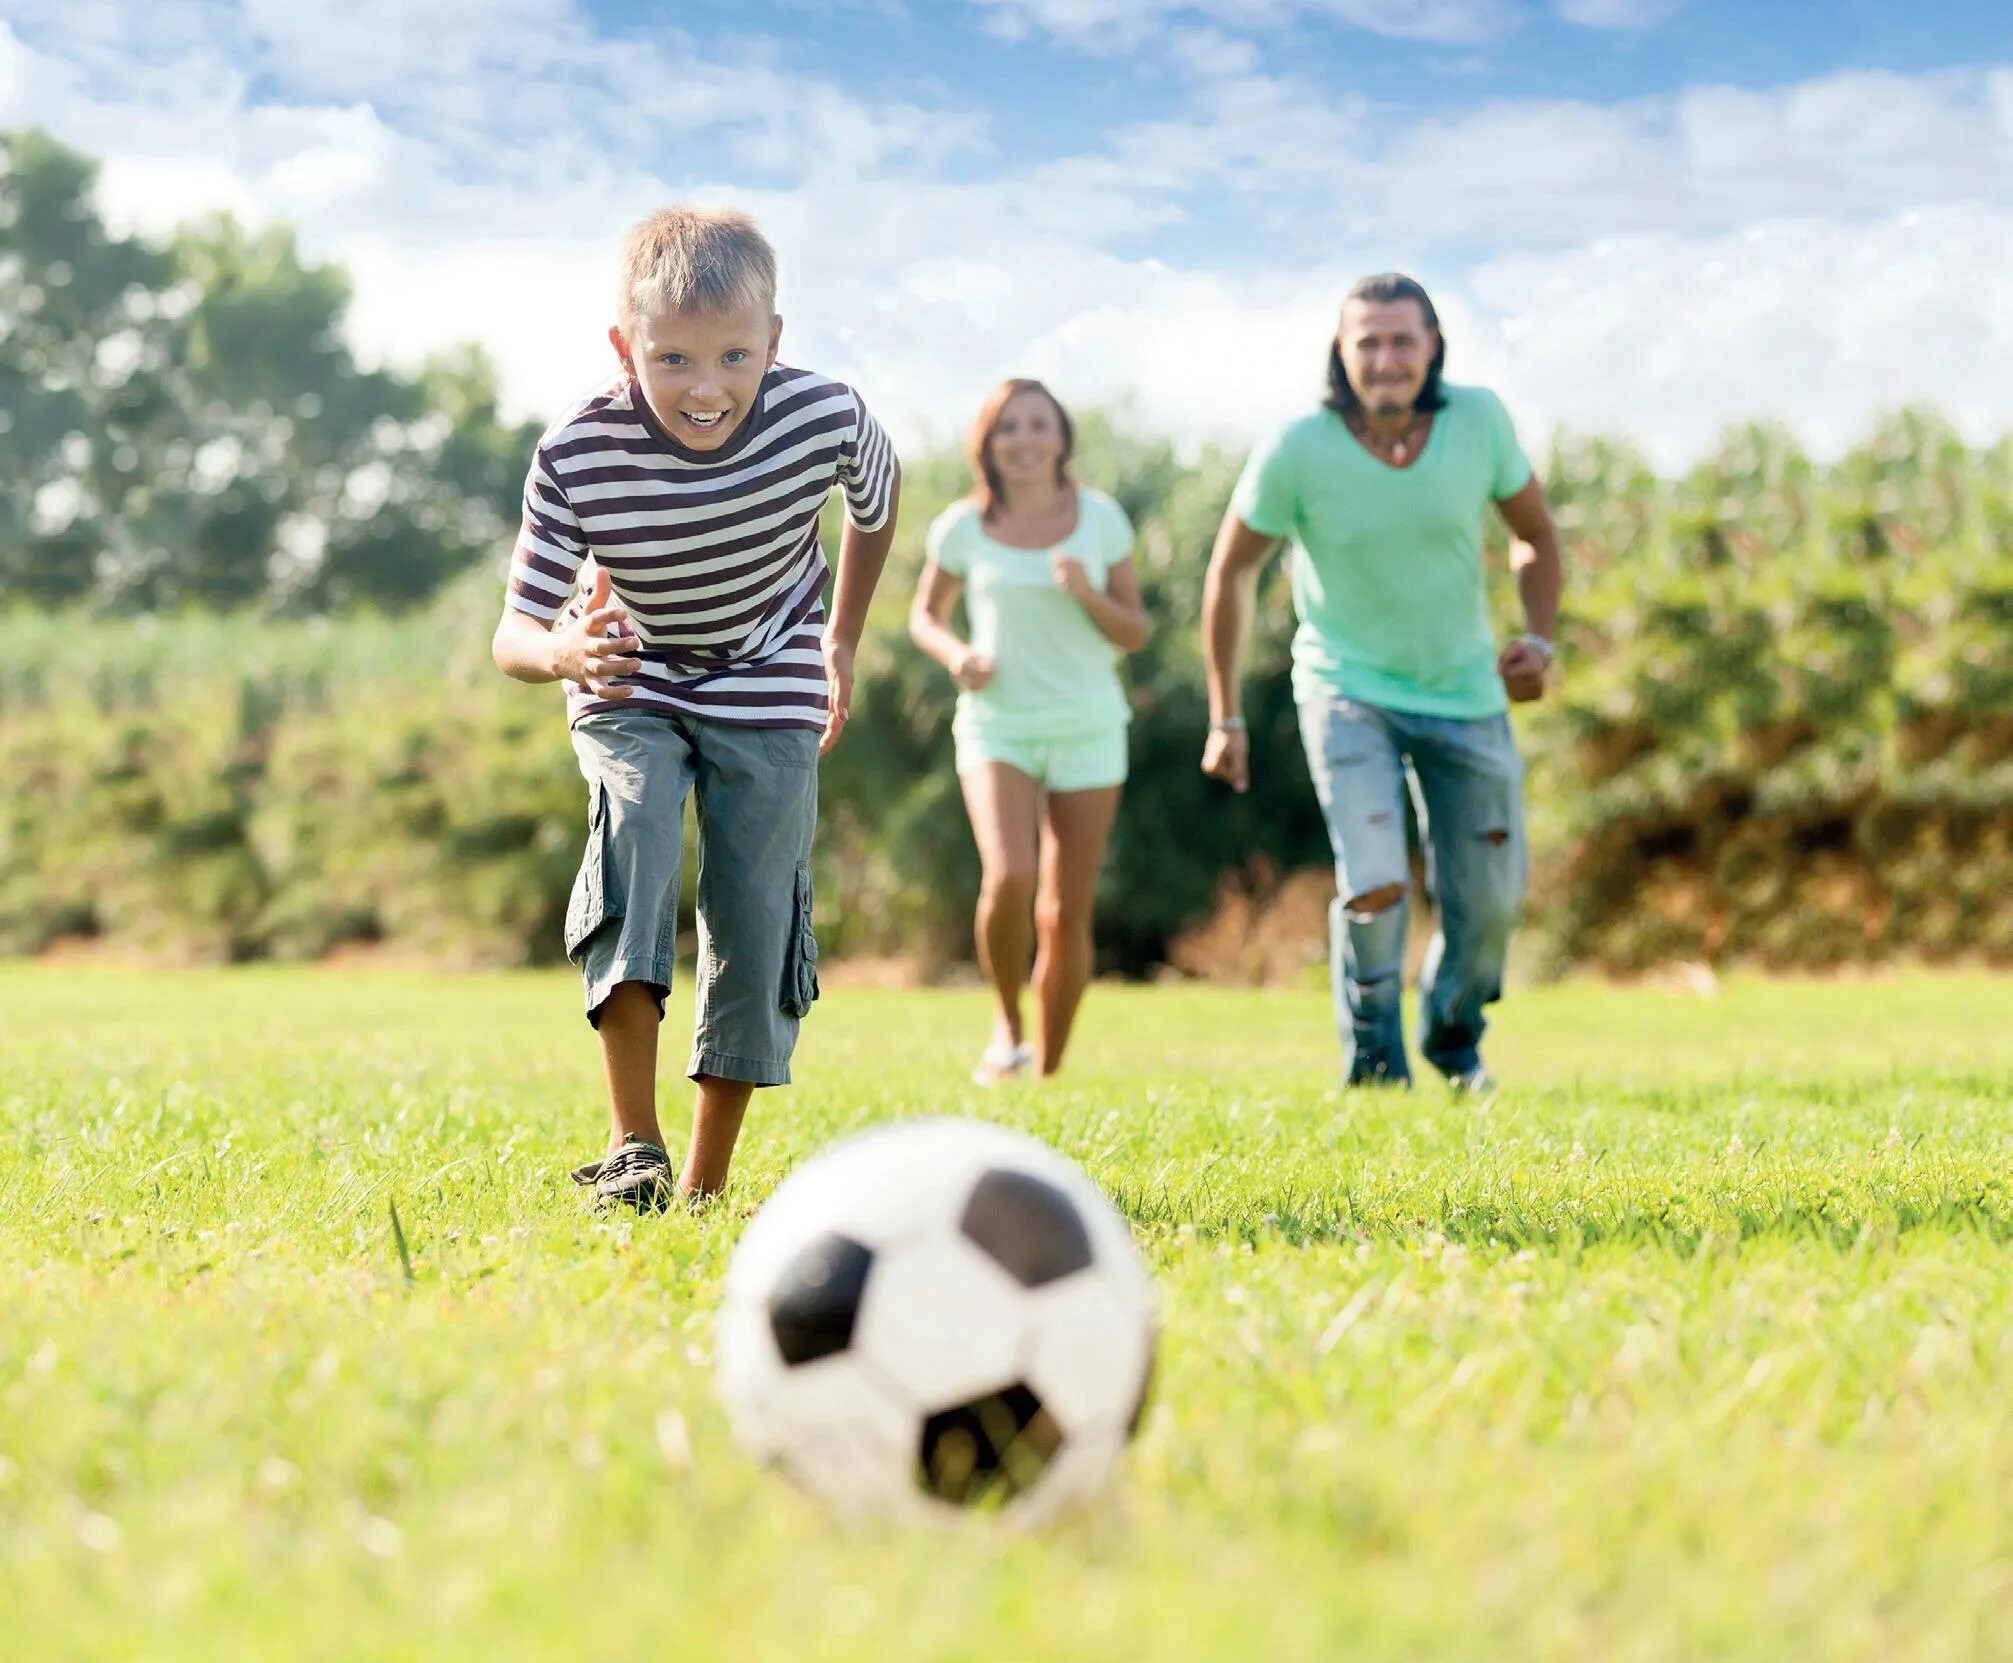 Сын играет в футбол. Футбол на природе. Спортивные и подвижные игры. Спортивная семья. Дети футбол природа.